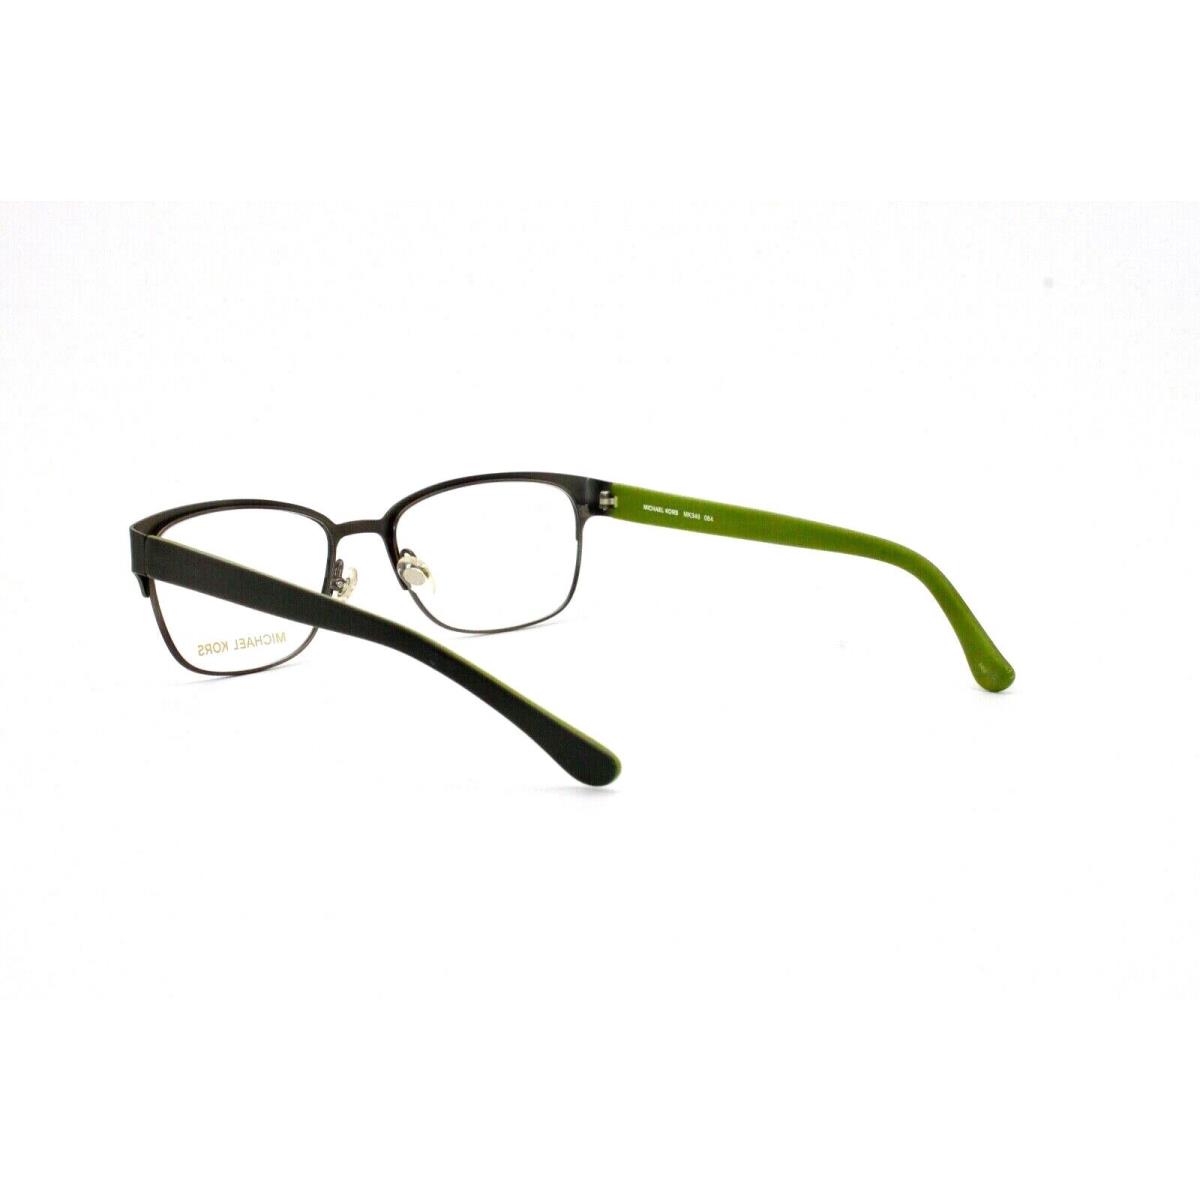 Michael Kors eyeglasses  - Green , Black Frame 2